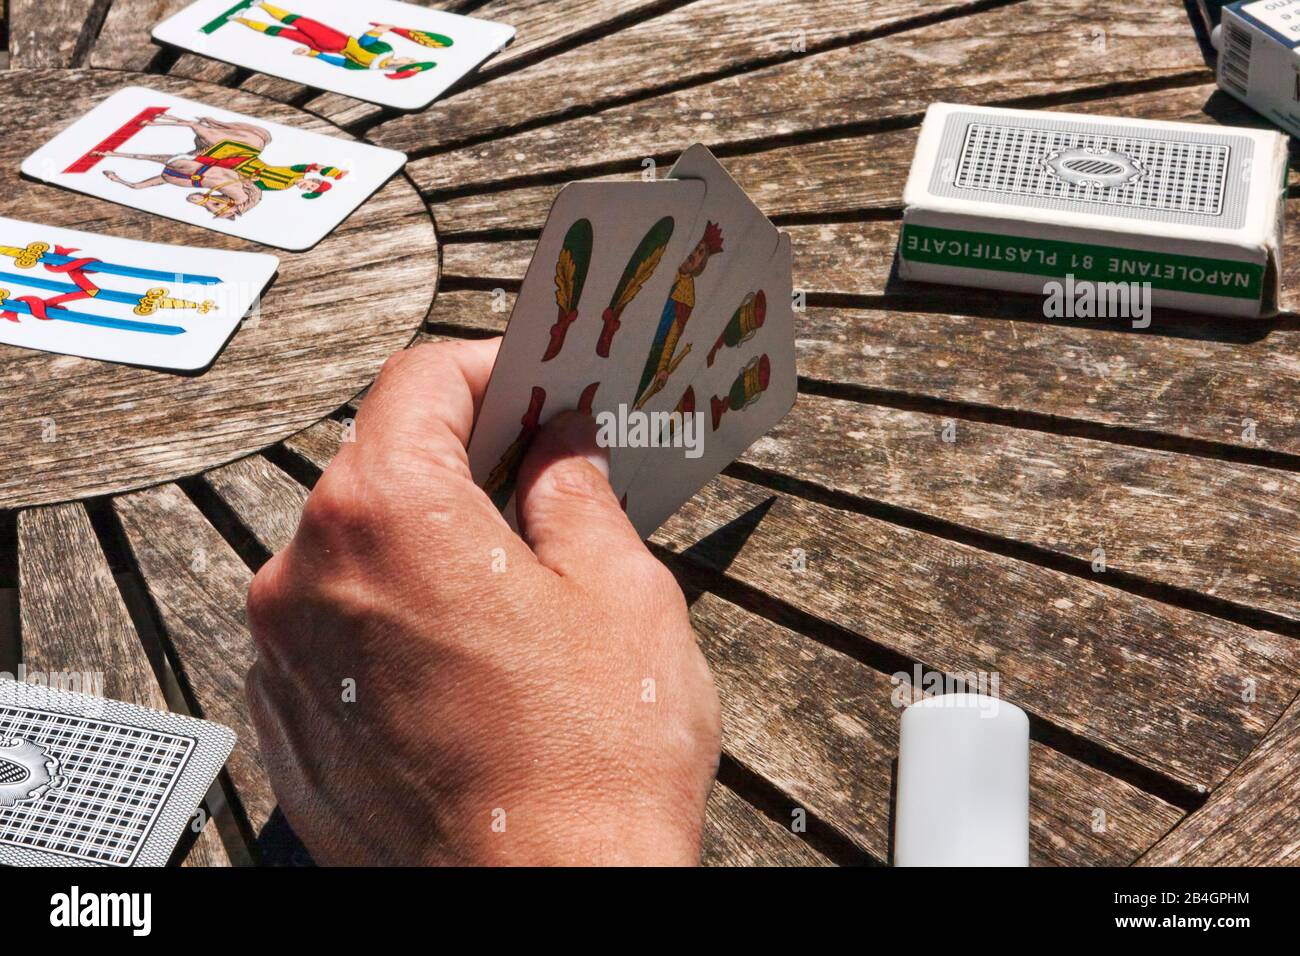 Turin, Italien, 15. Mai 2014: Während der Kaffeepause, spielen die Mitarbeiterinnen Trumpf mit typisch neapolitanischen Karten auf einem Holztisch, first-person Ansicht auf die g Stockfoto